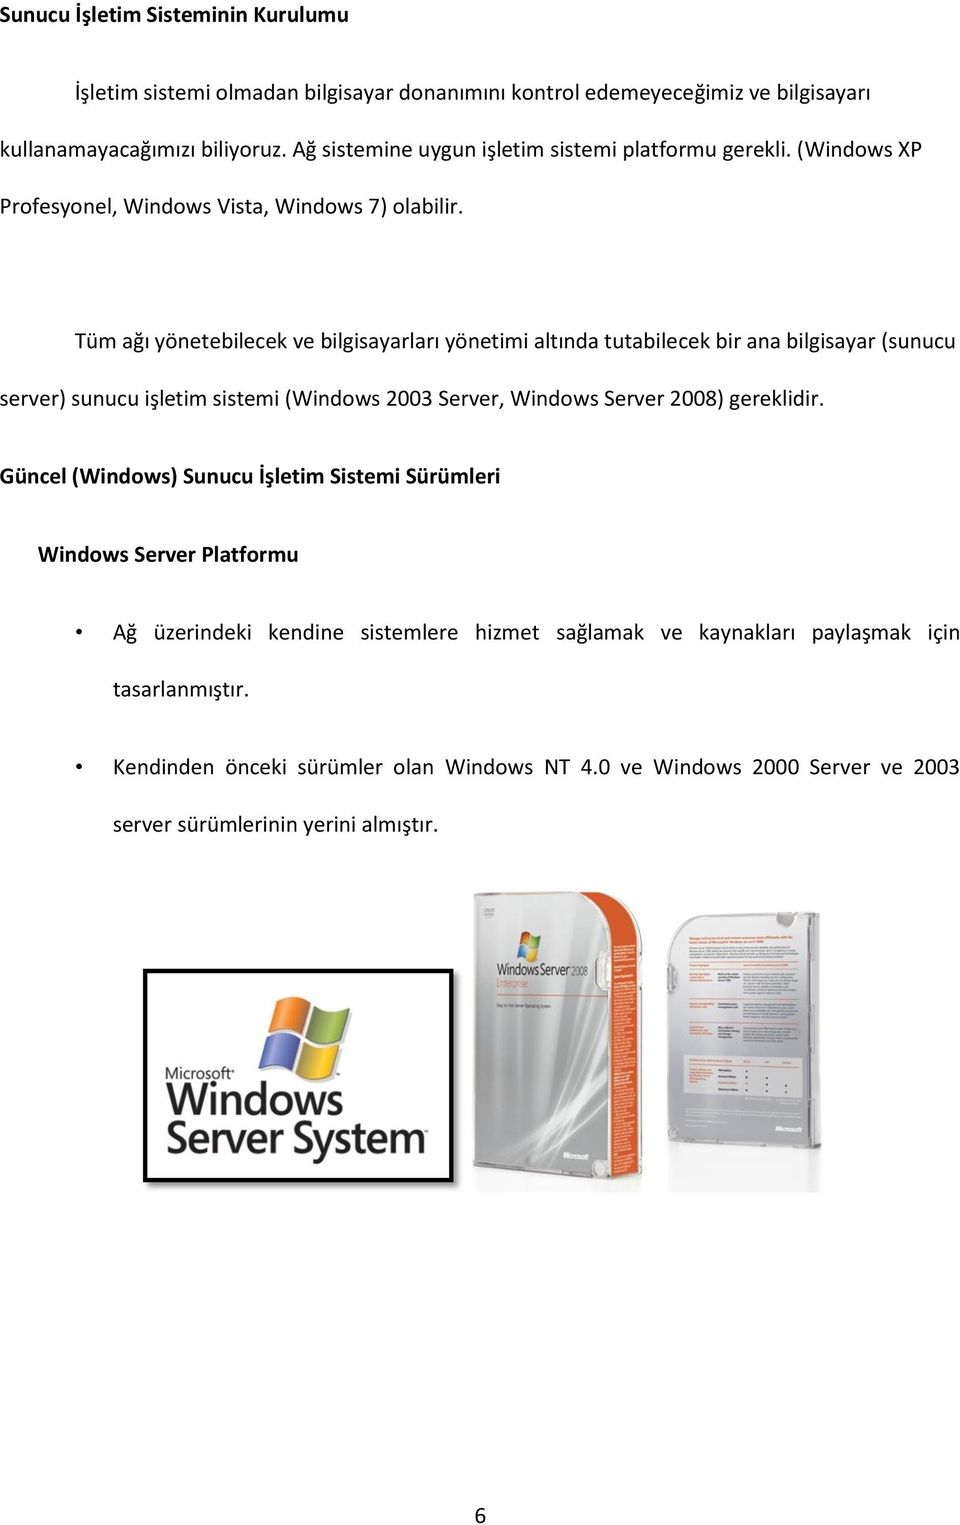 Tüm ağı yönetebilecek ve bilgisayarları yönetimi altında tutabilecek bir ana bilgisayar (sunucu server) sunucu işletim sistemi (Windows 2003 Server, Windows Server 2008) gereklidir.